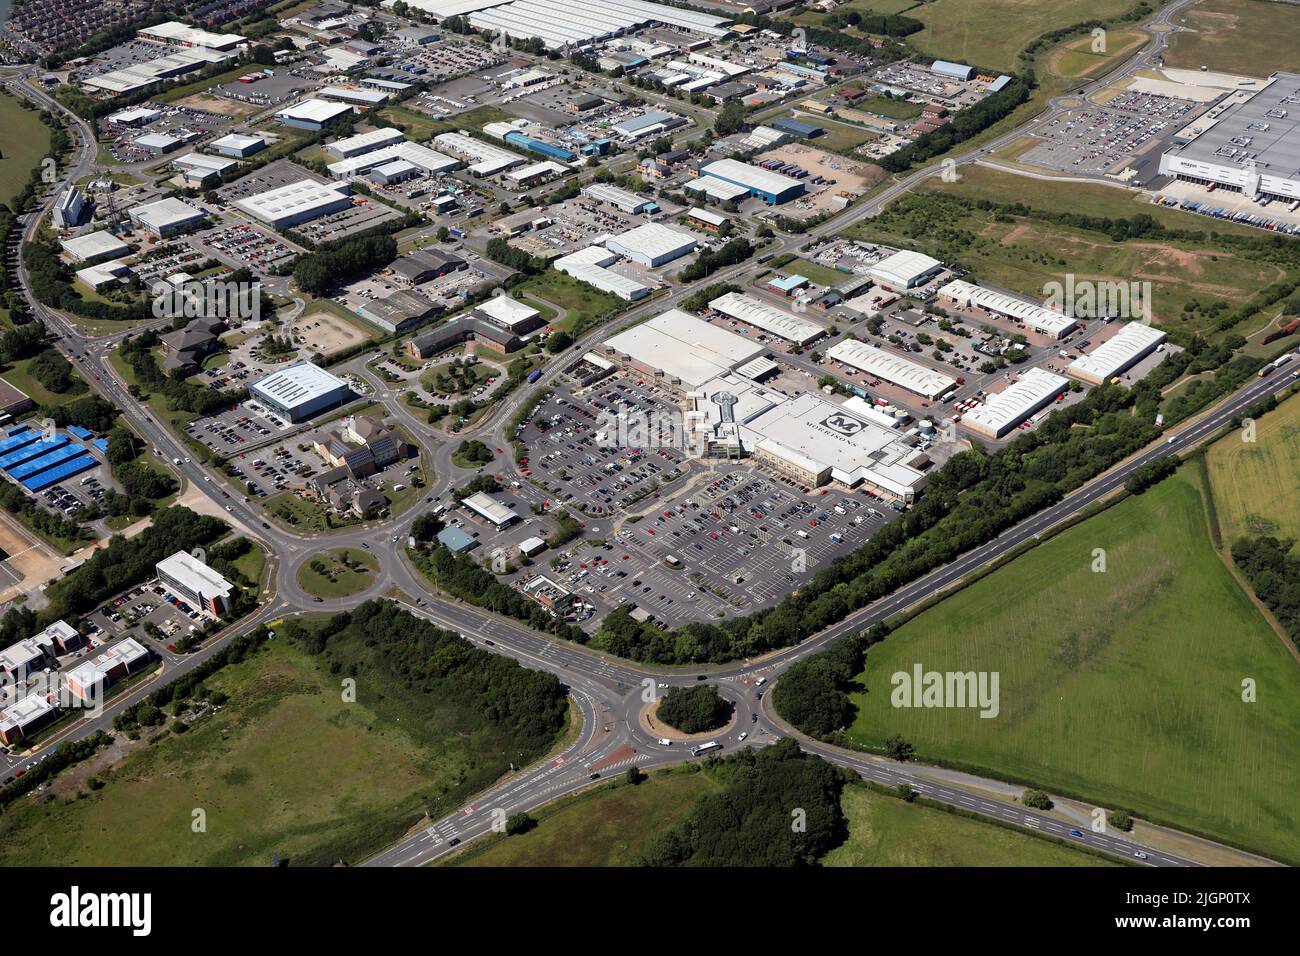 Vista aerea dello sviluppo di vendita al dettaglio di Morton Park a Darliington, County Durham con il superstore Morrisons prominente Foto Stock